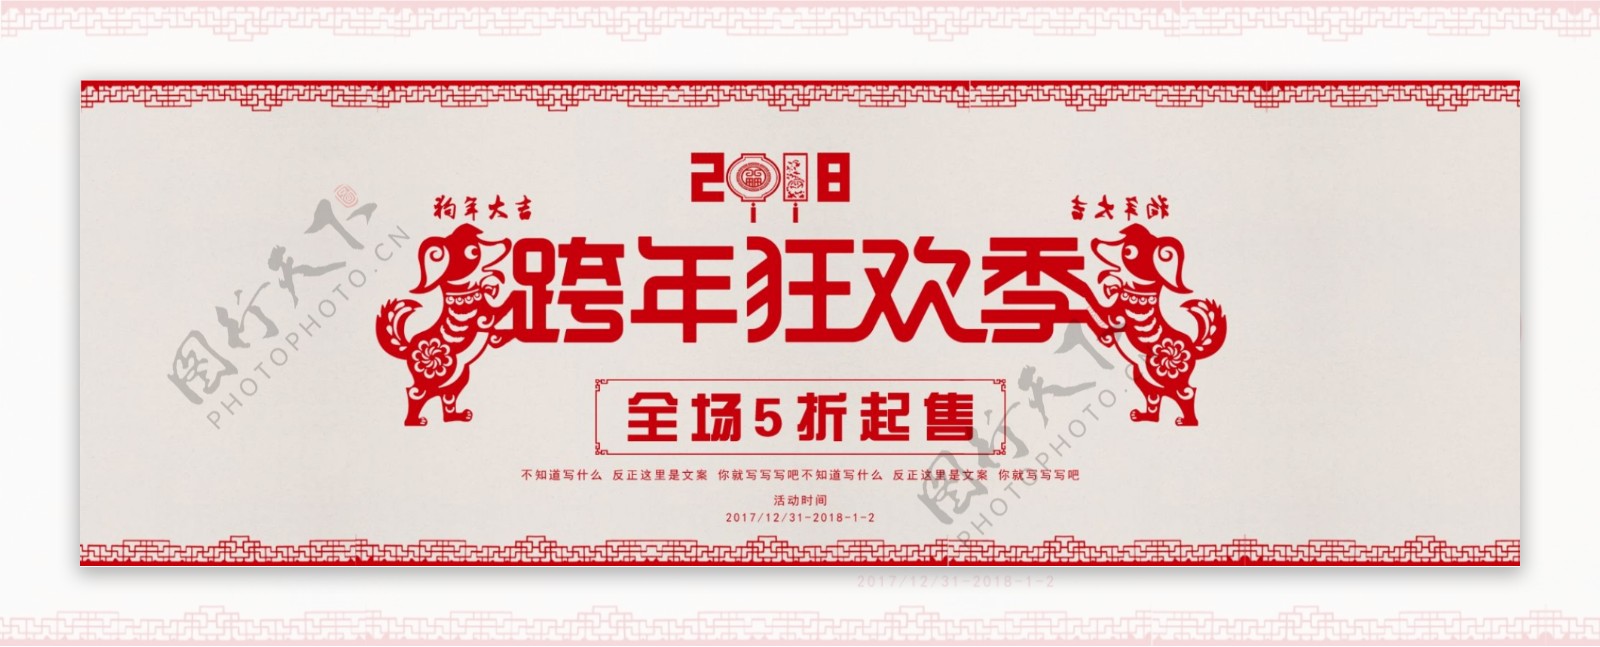 电商淘宝天猫跨年狂欢季中国剪纸风格海报